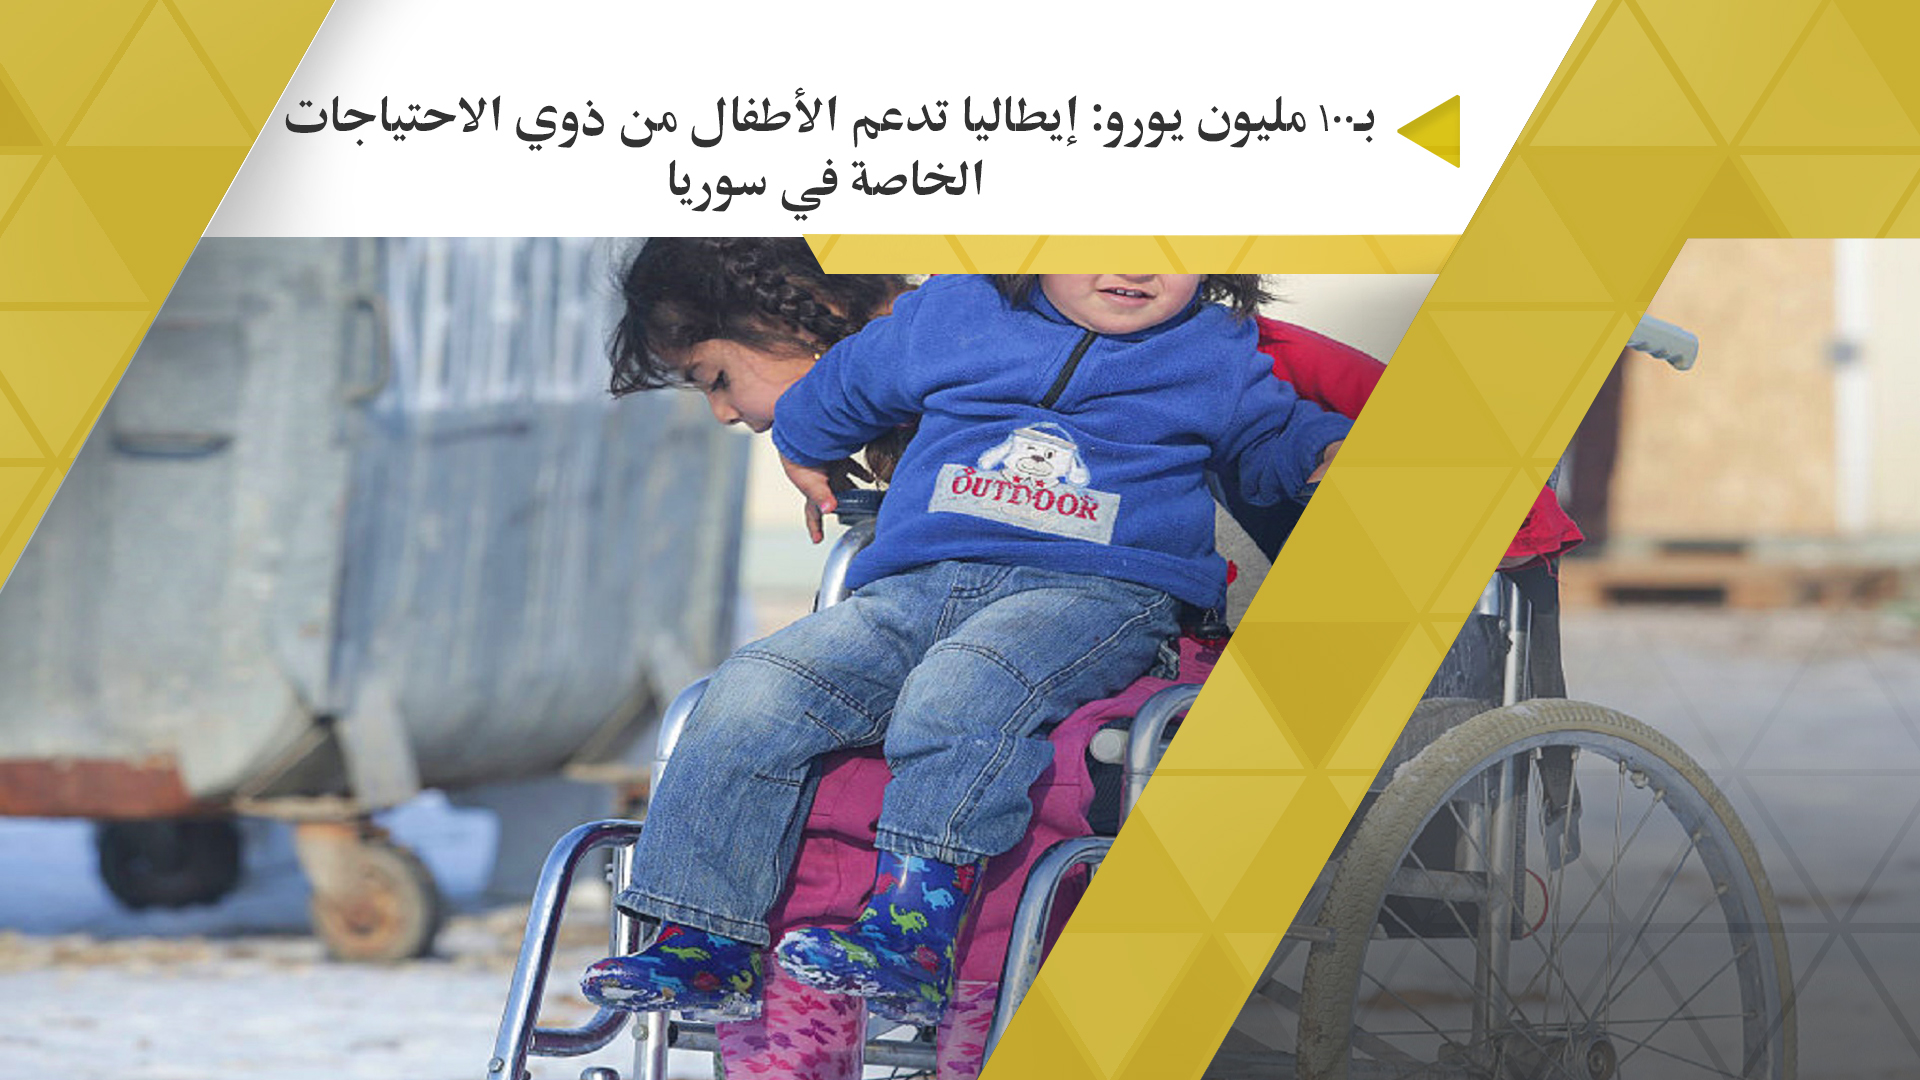  بـ100 مليون يورو: إيطاليا تدعم الأطفال من ذوي الاحتياجات الخاصة في سوريا